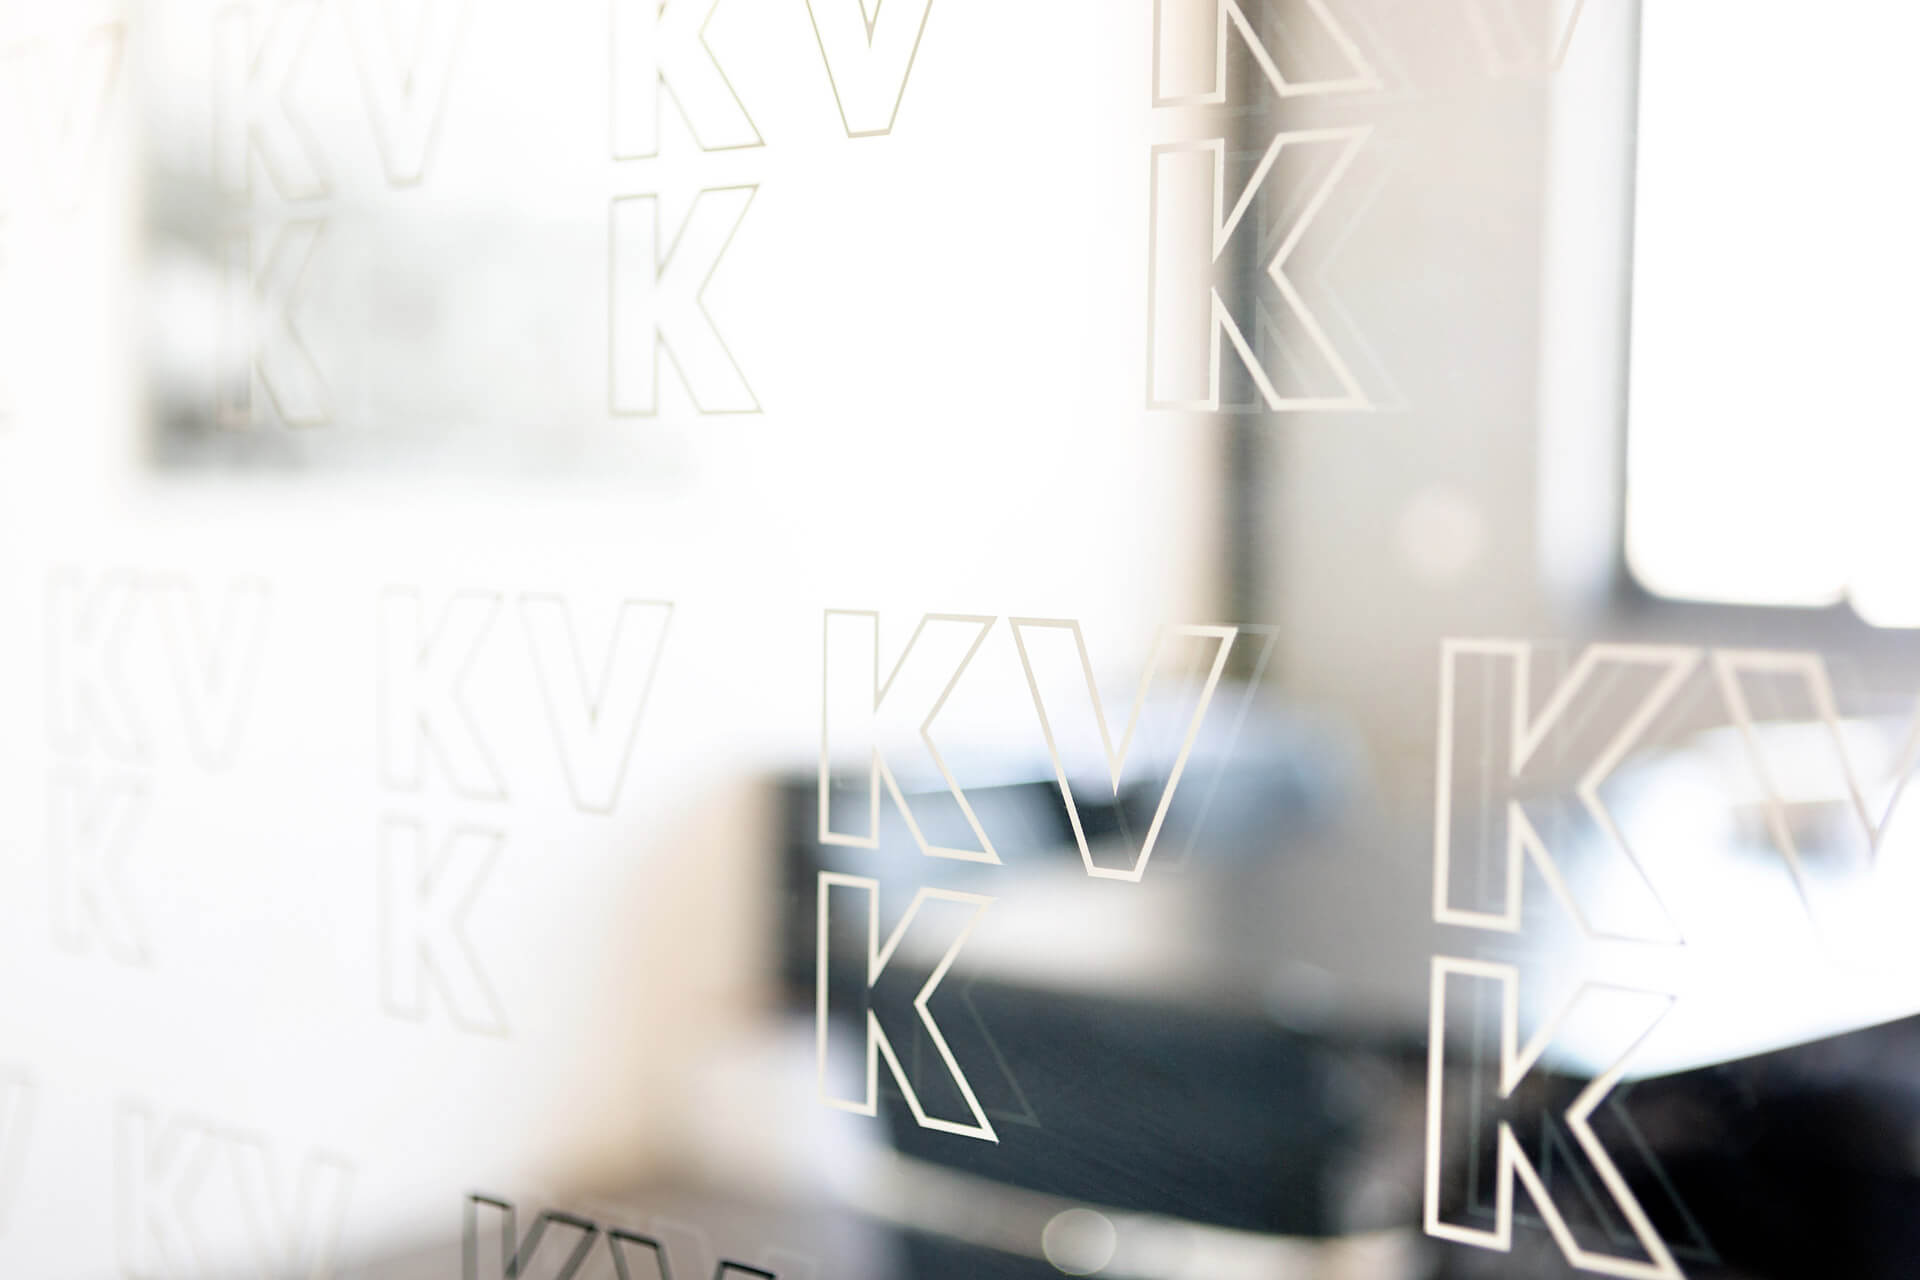 ene´t GmbH und KVK planen Veröffentlichung eines Konzessionsatlas